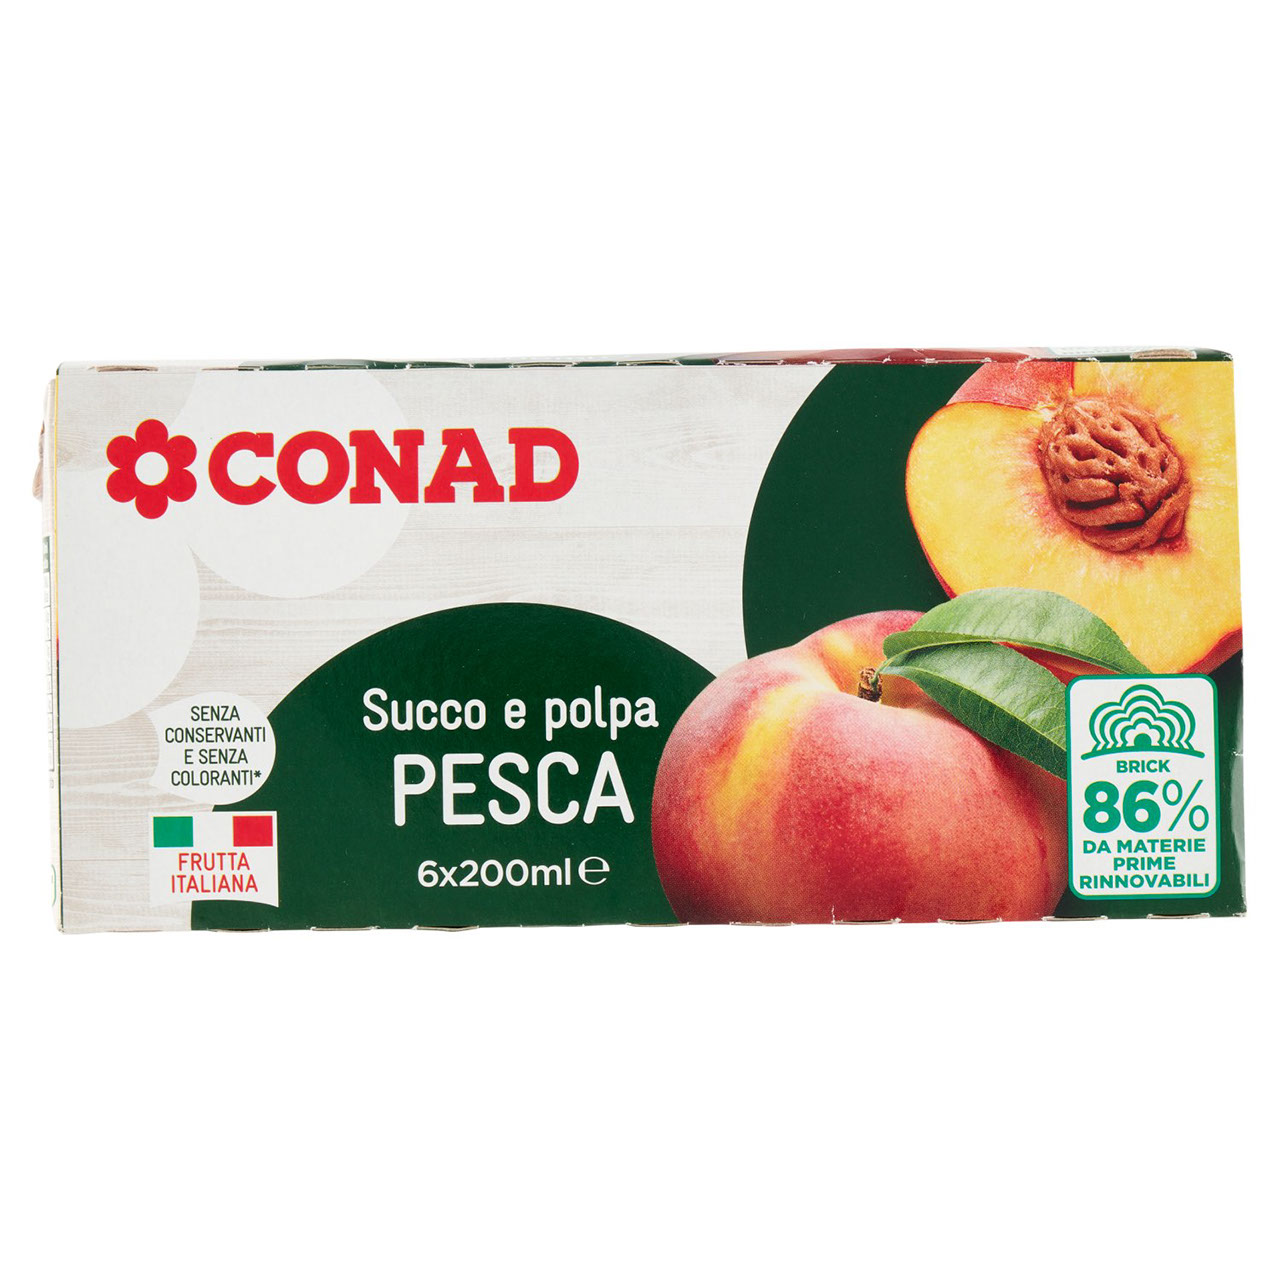 Succo e polpa Pesca 6x200ml Conad